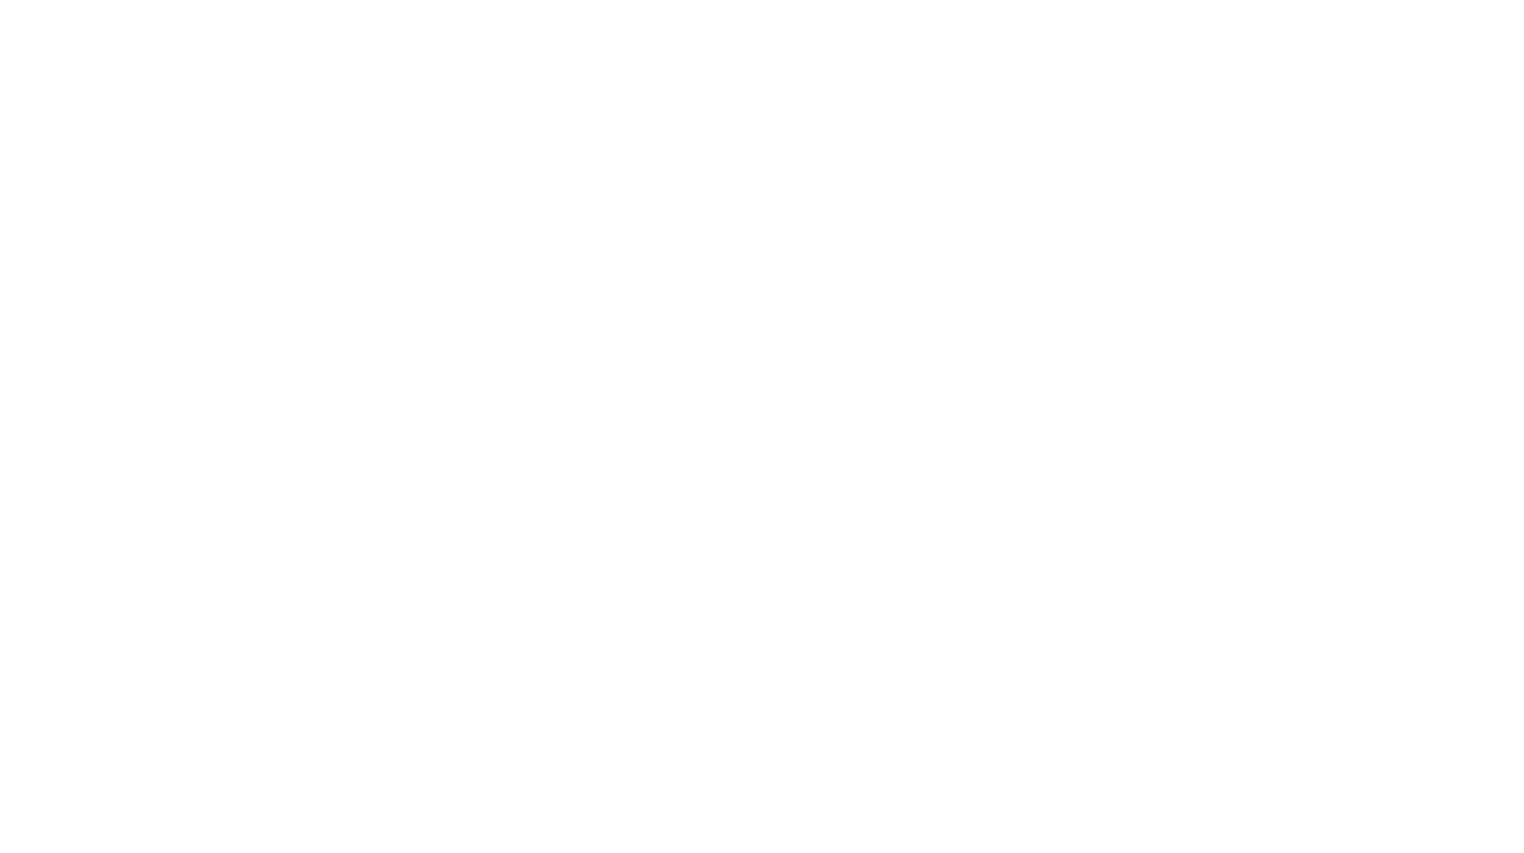 Chicken Little logo